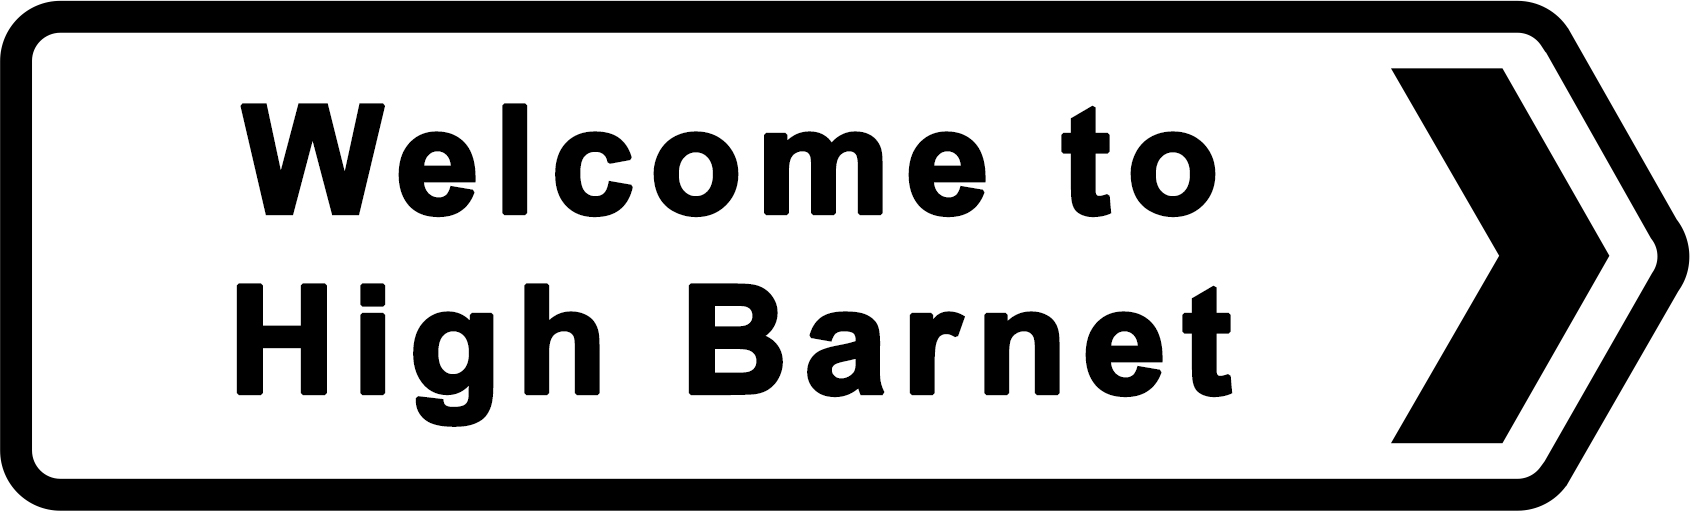 High Barnet Station - Driving lessons in Barnet, EN4/EN5, London borough of Barnet, Hertfordshire, Greater London